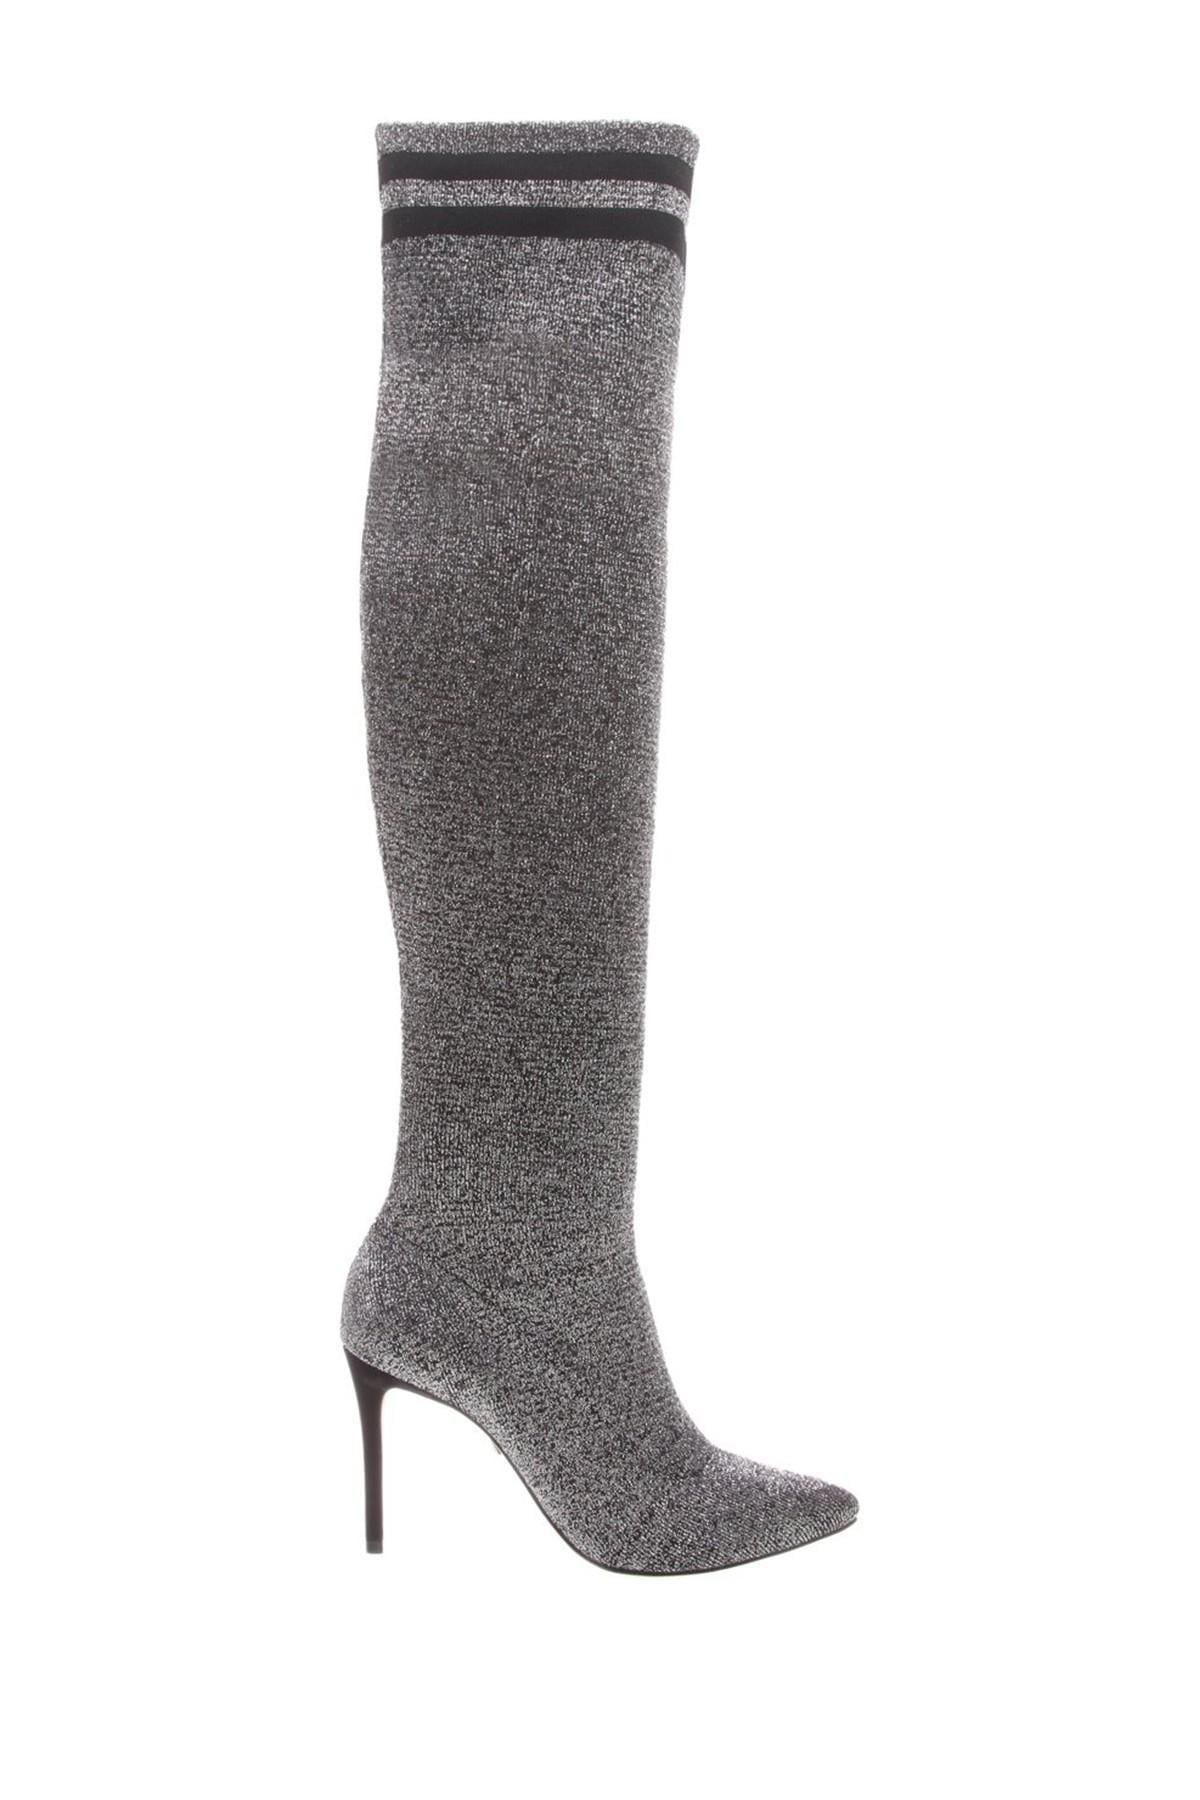 Schutz Shoes - Schutz Ursula Stretch Knee High Boots - Silver / Black ...